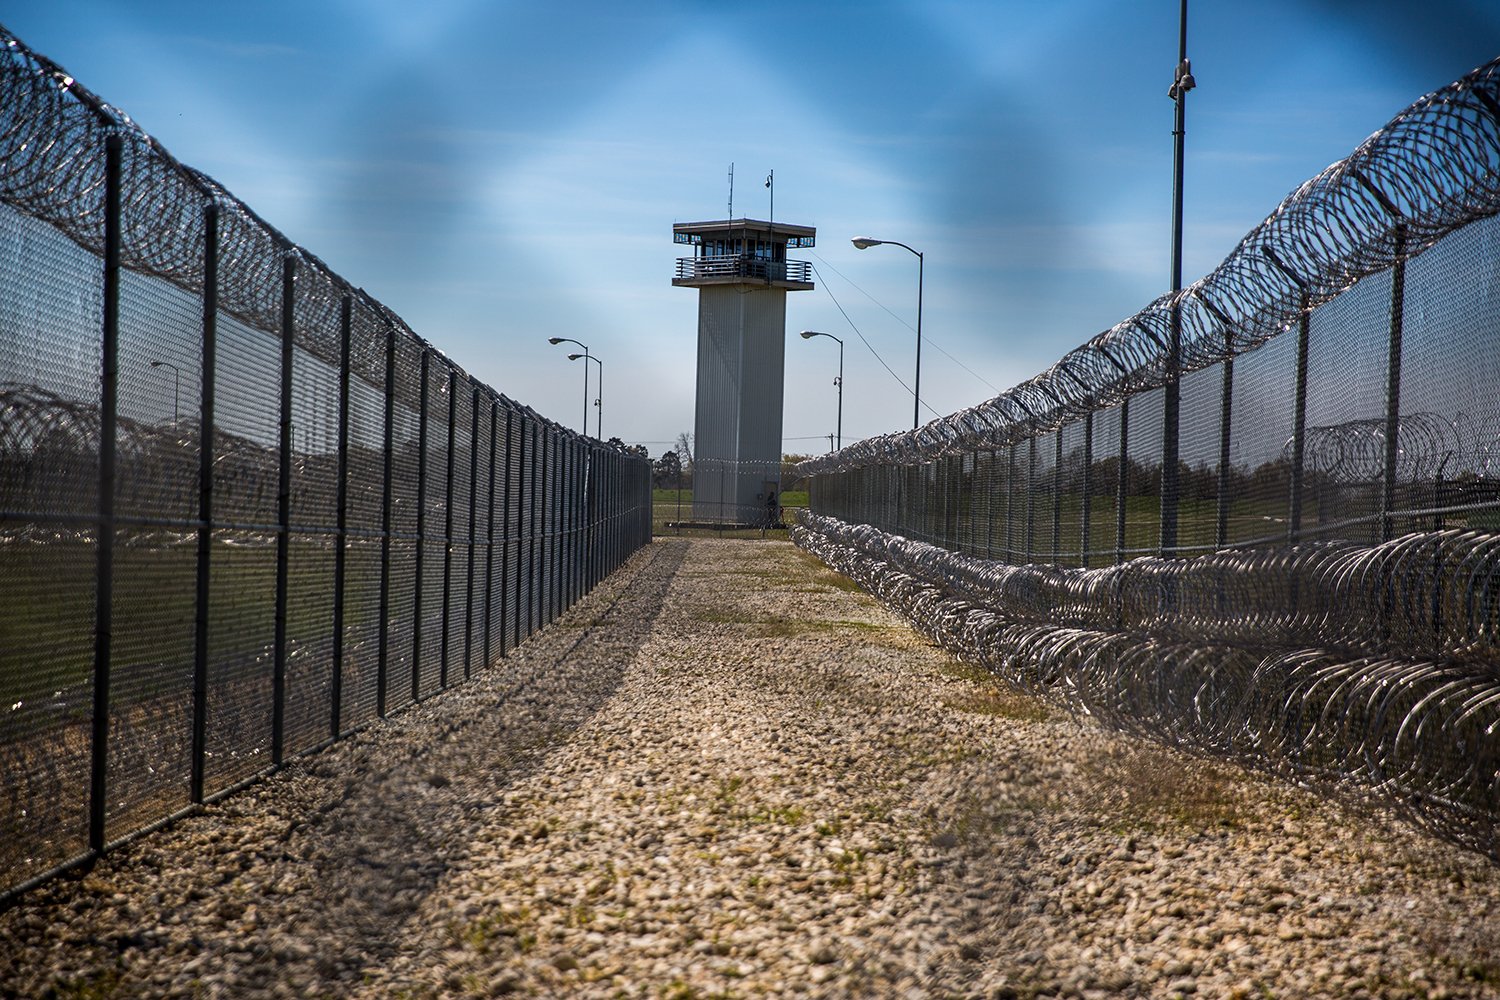 Telford prison, New Boston, Texas.